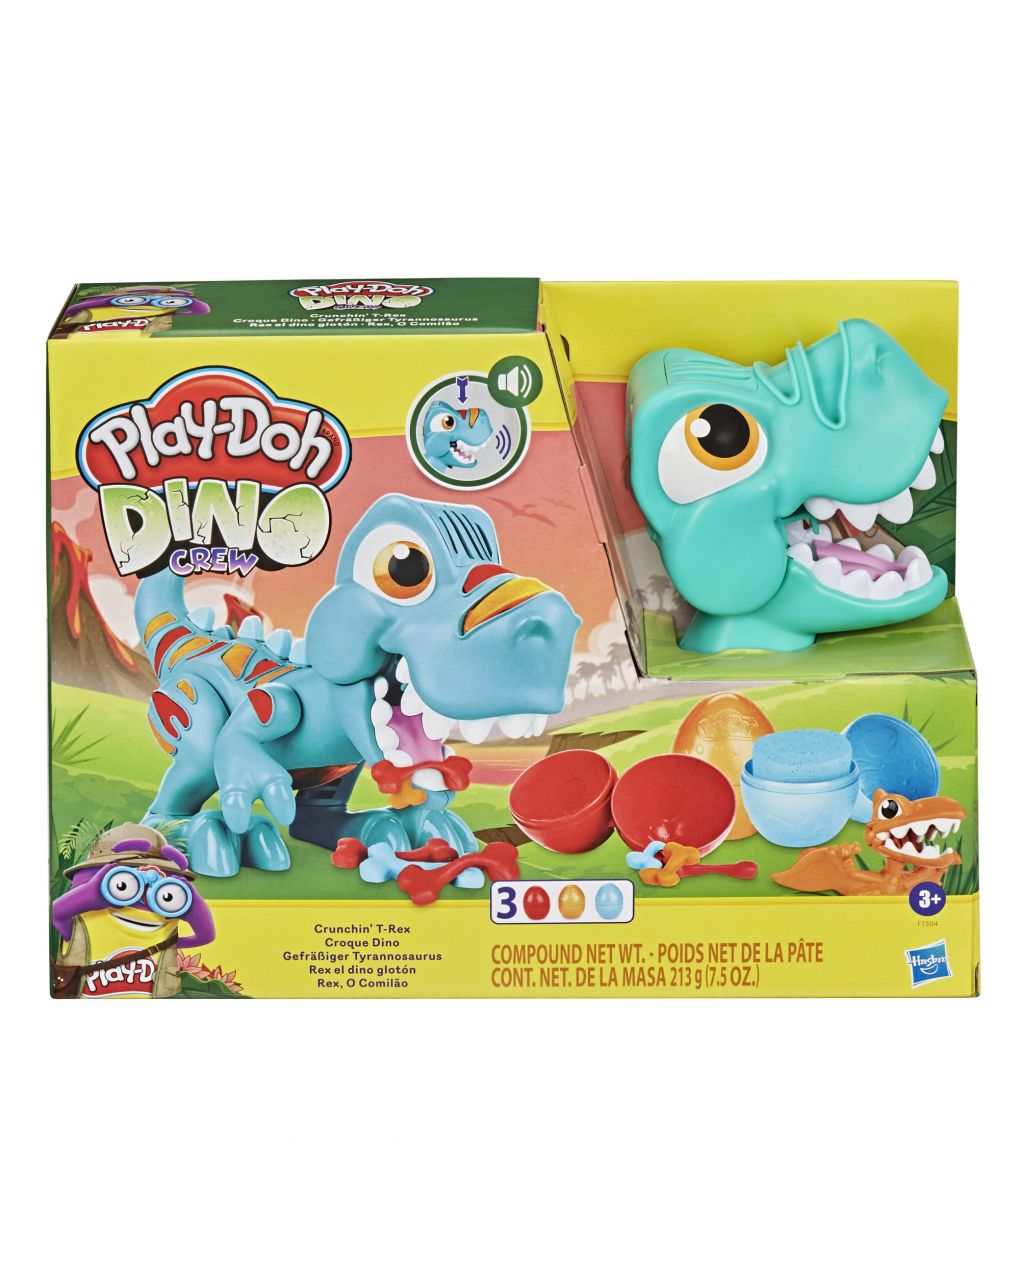 Il t-rex mangione: dinosauro con suoni e 3 uova 3+ anni - play-doh hasbro dino-crew - Play-Doh